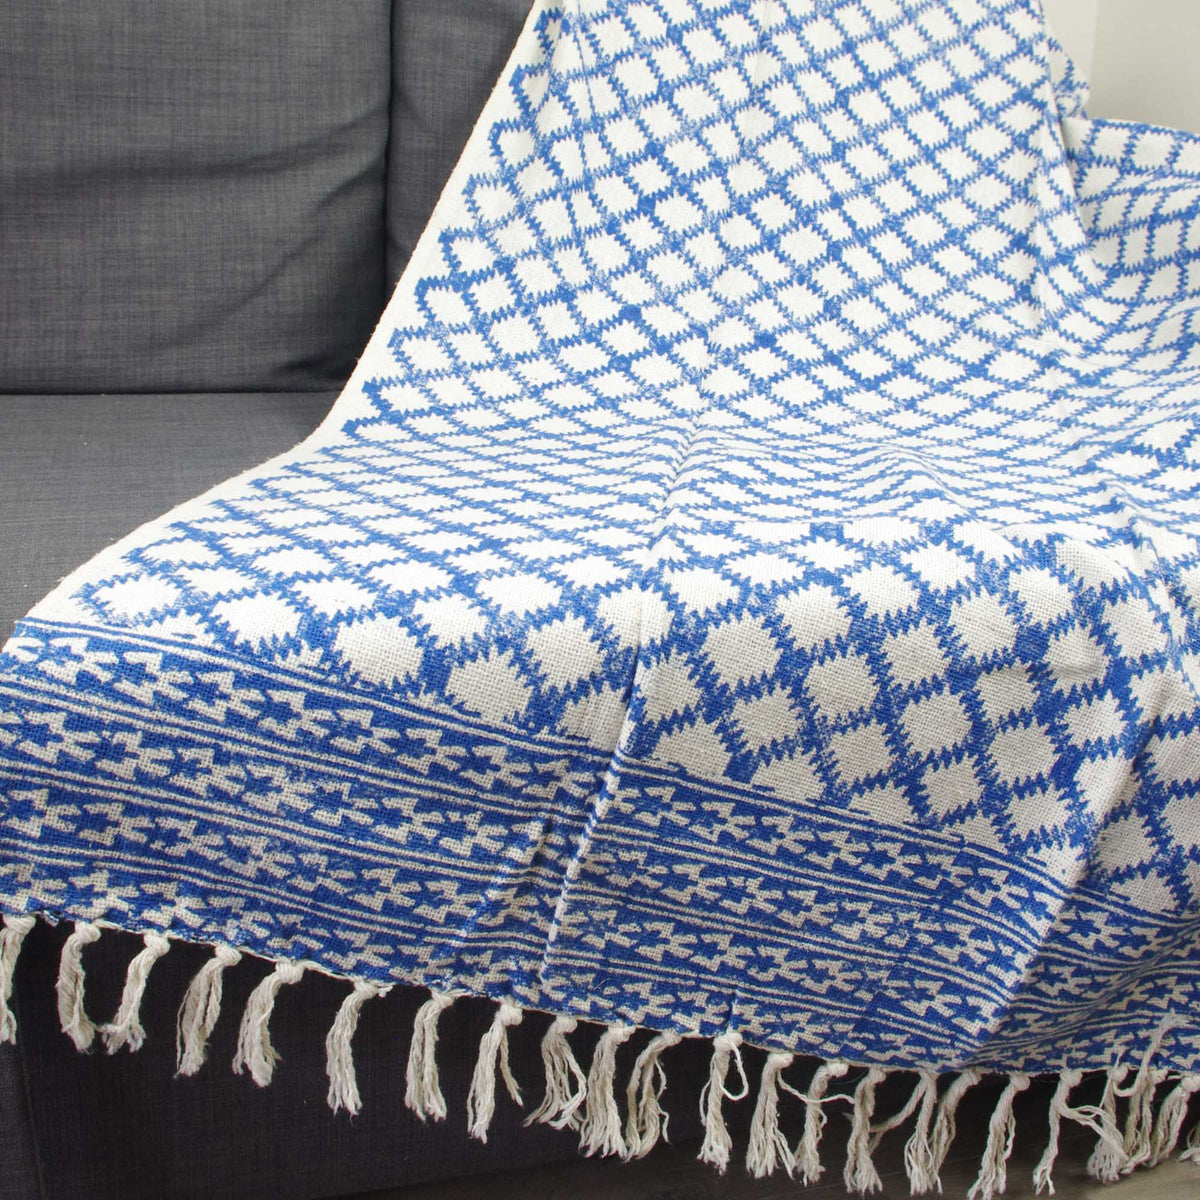 Blockbedruckter, handgewebter Sofaüberwurf aus Baumwolle mit Quasten - Blau, Weiß, Geometrisch